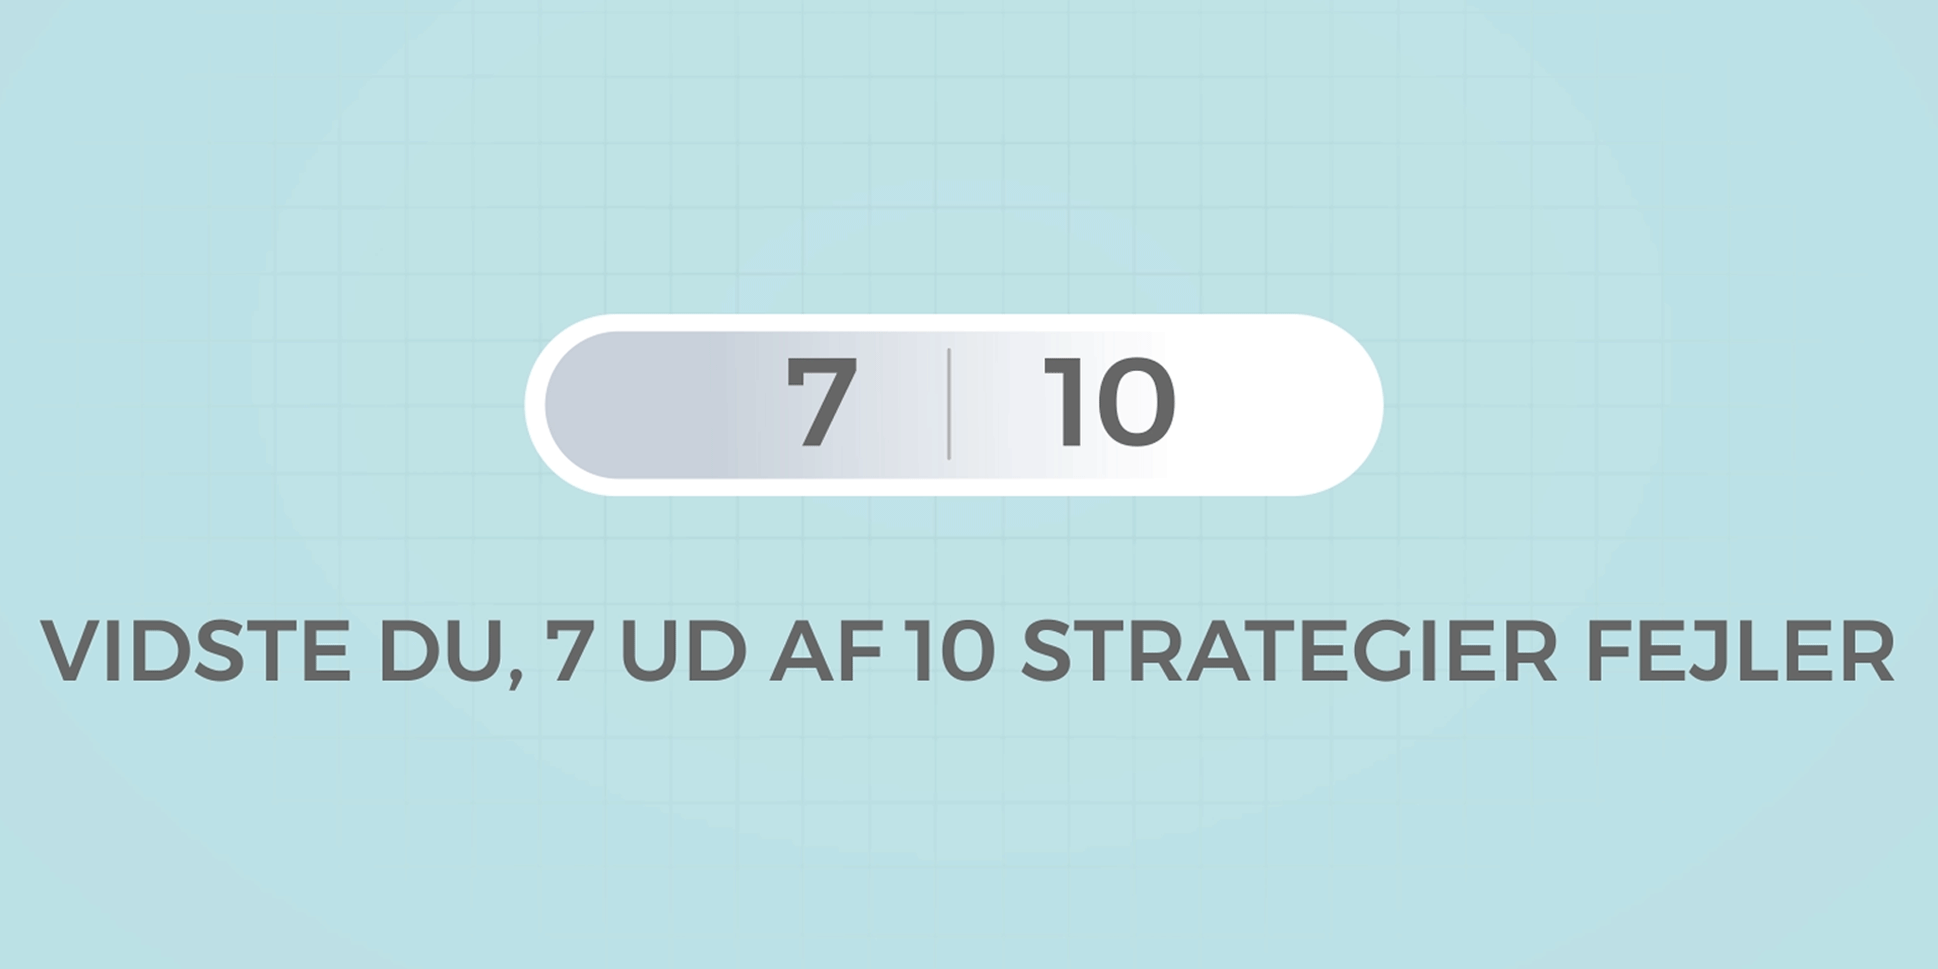 Vidste du, 7 ud af 10 strategier fejler?